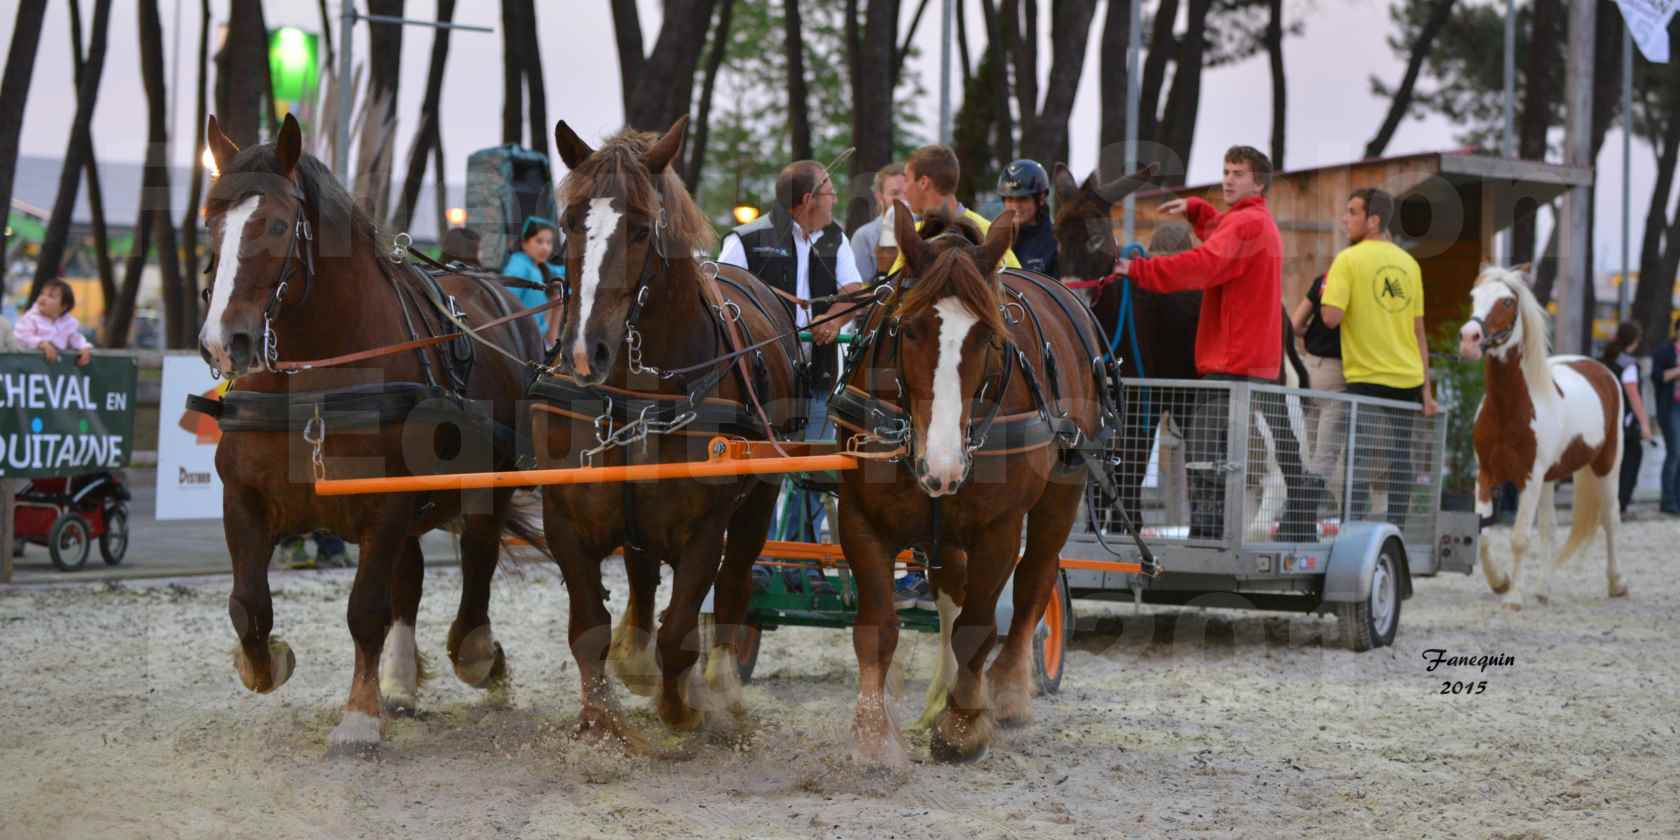 Salon Equitaine de Bordeaux 2015 - Démonstration d'attelage à 3 chevaux de front - 12